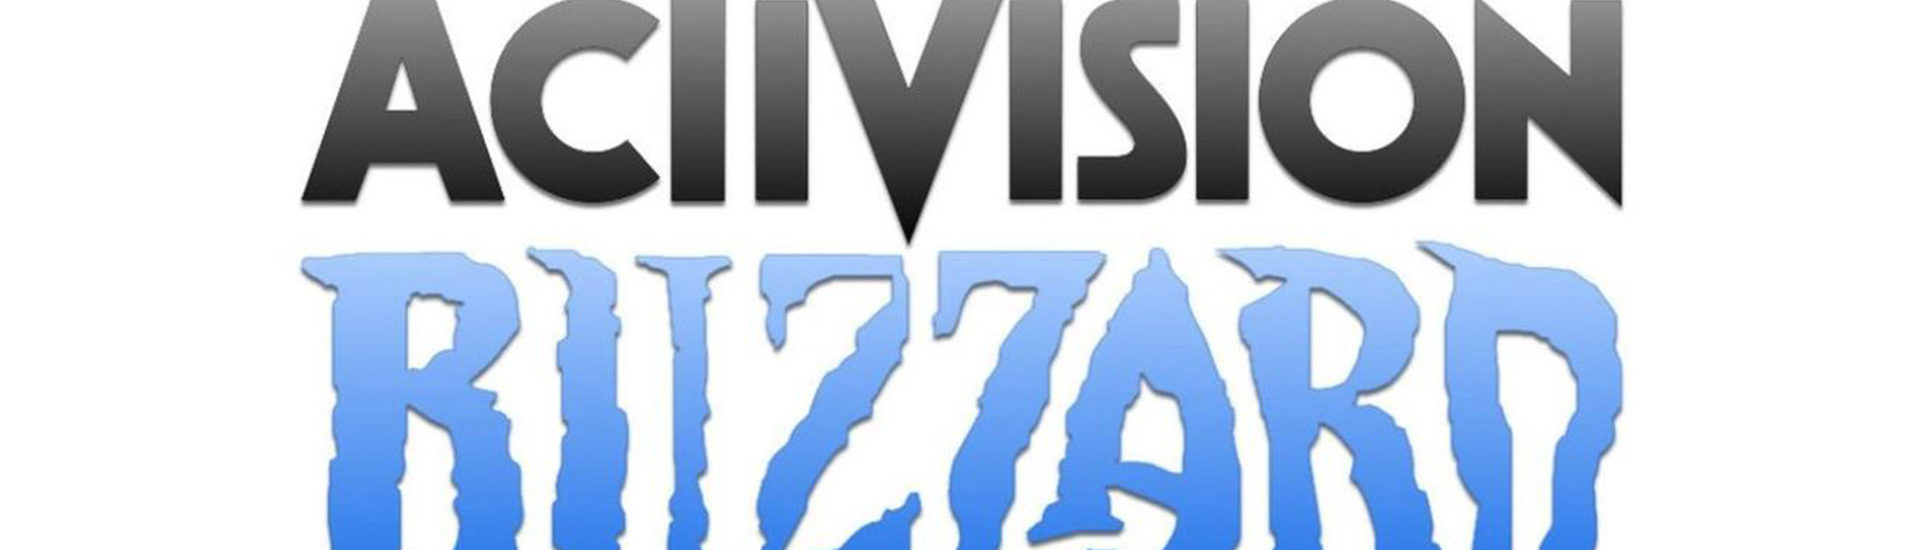 Activision Blizzard: Mitarbeiter fordern Rücktritt